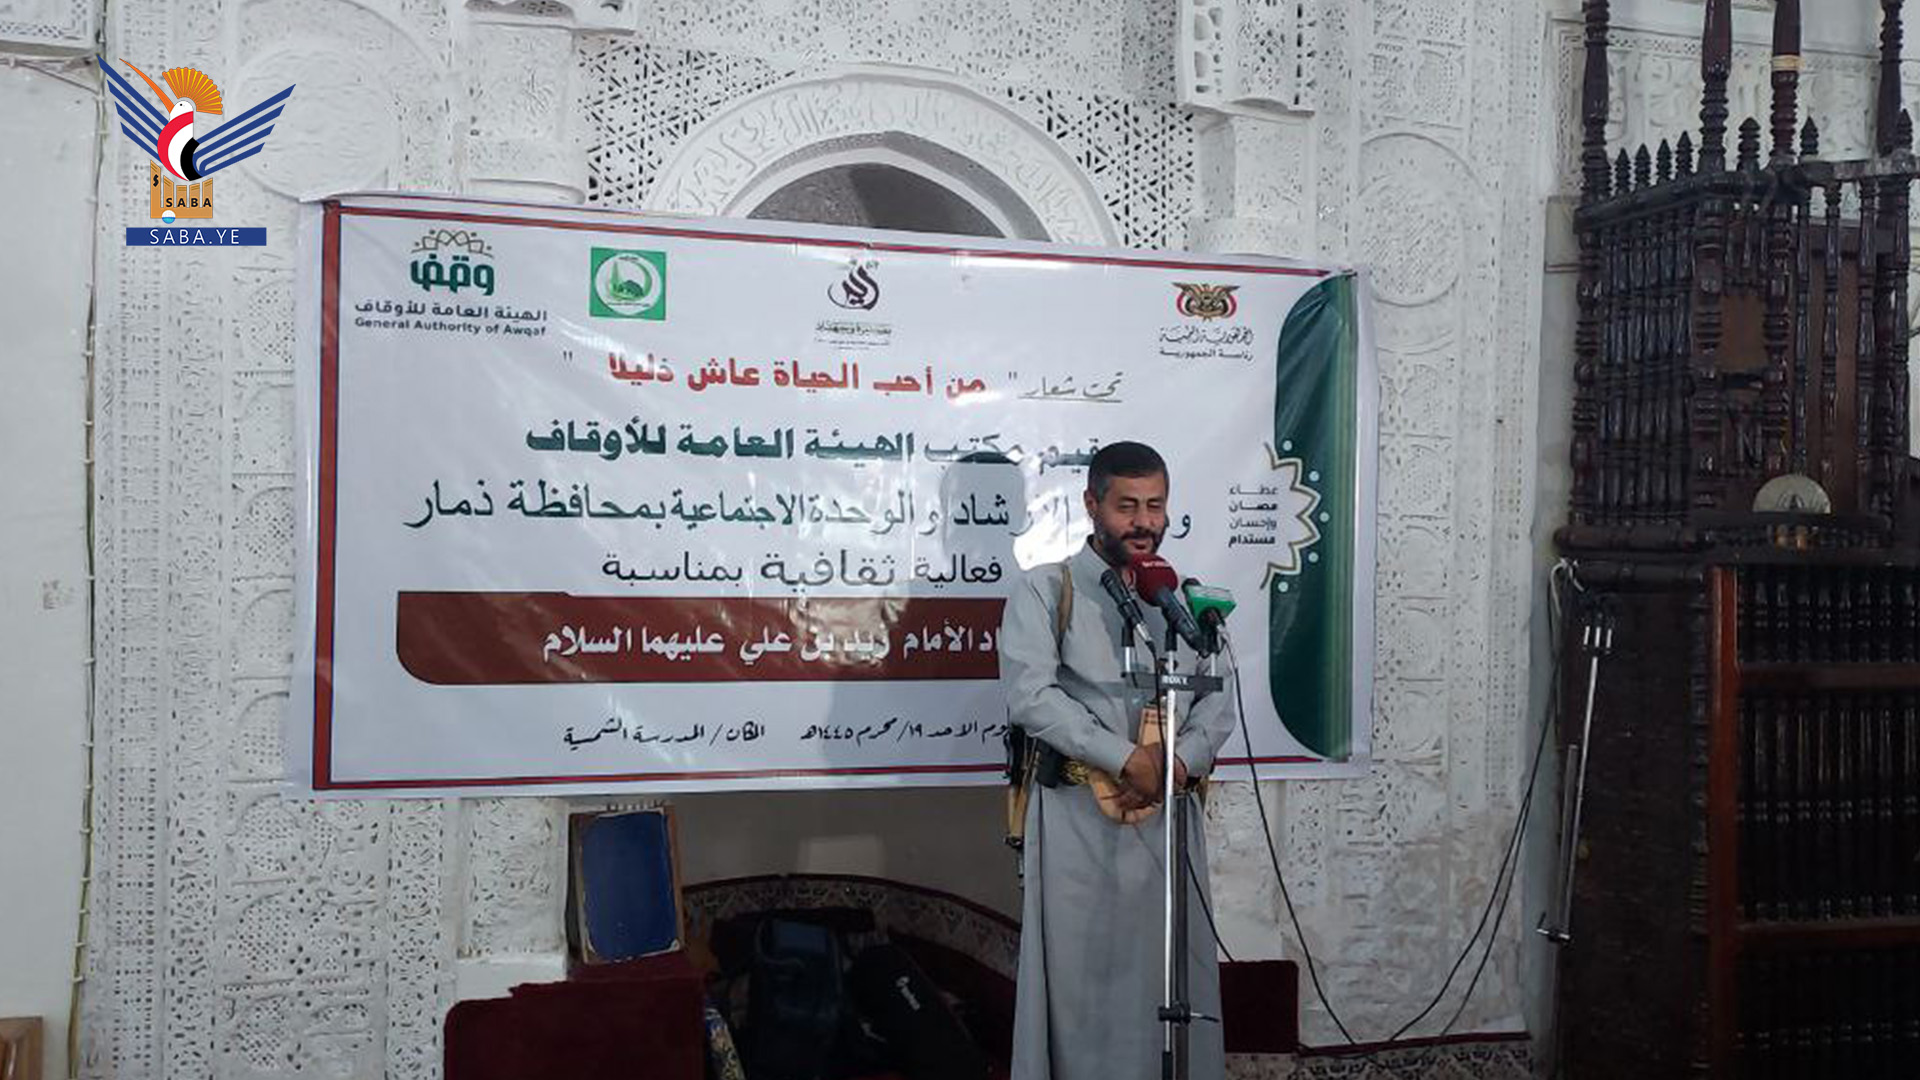 فعالية لمكتبي هيئة الأوقاف والإرشاد بذمار إحياء لذكرى استشهاد الإمام زيد